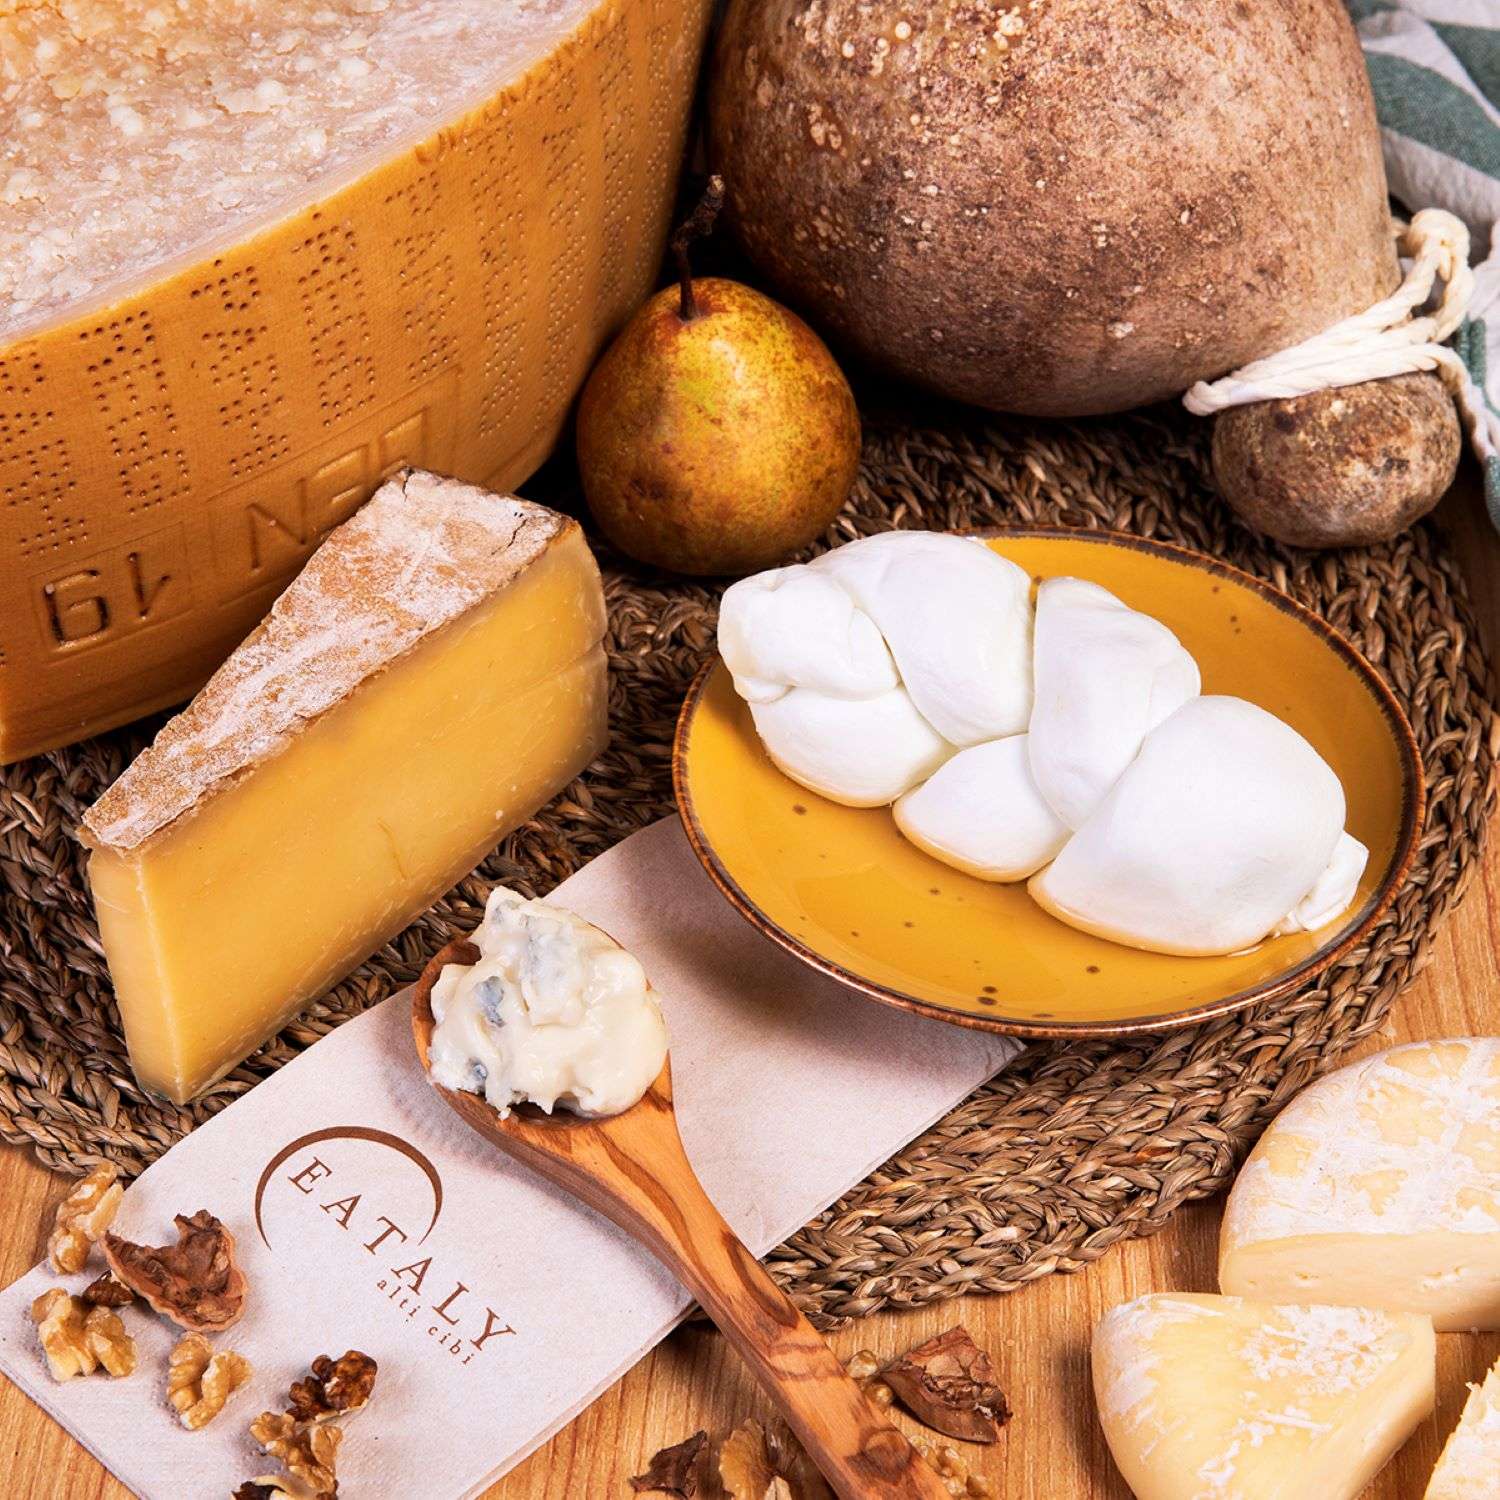 Da Eataly Lingotto fino al 5 maggio prosegue il mese dei formaggi